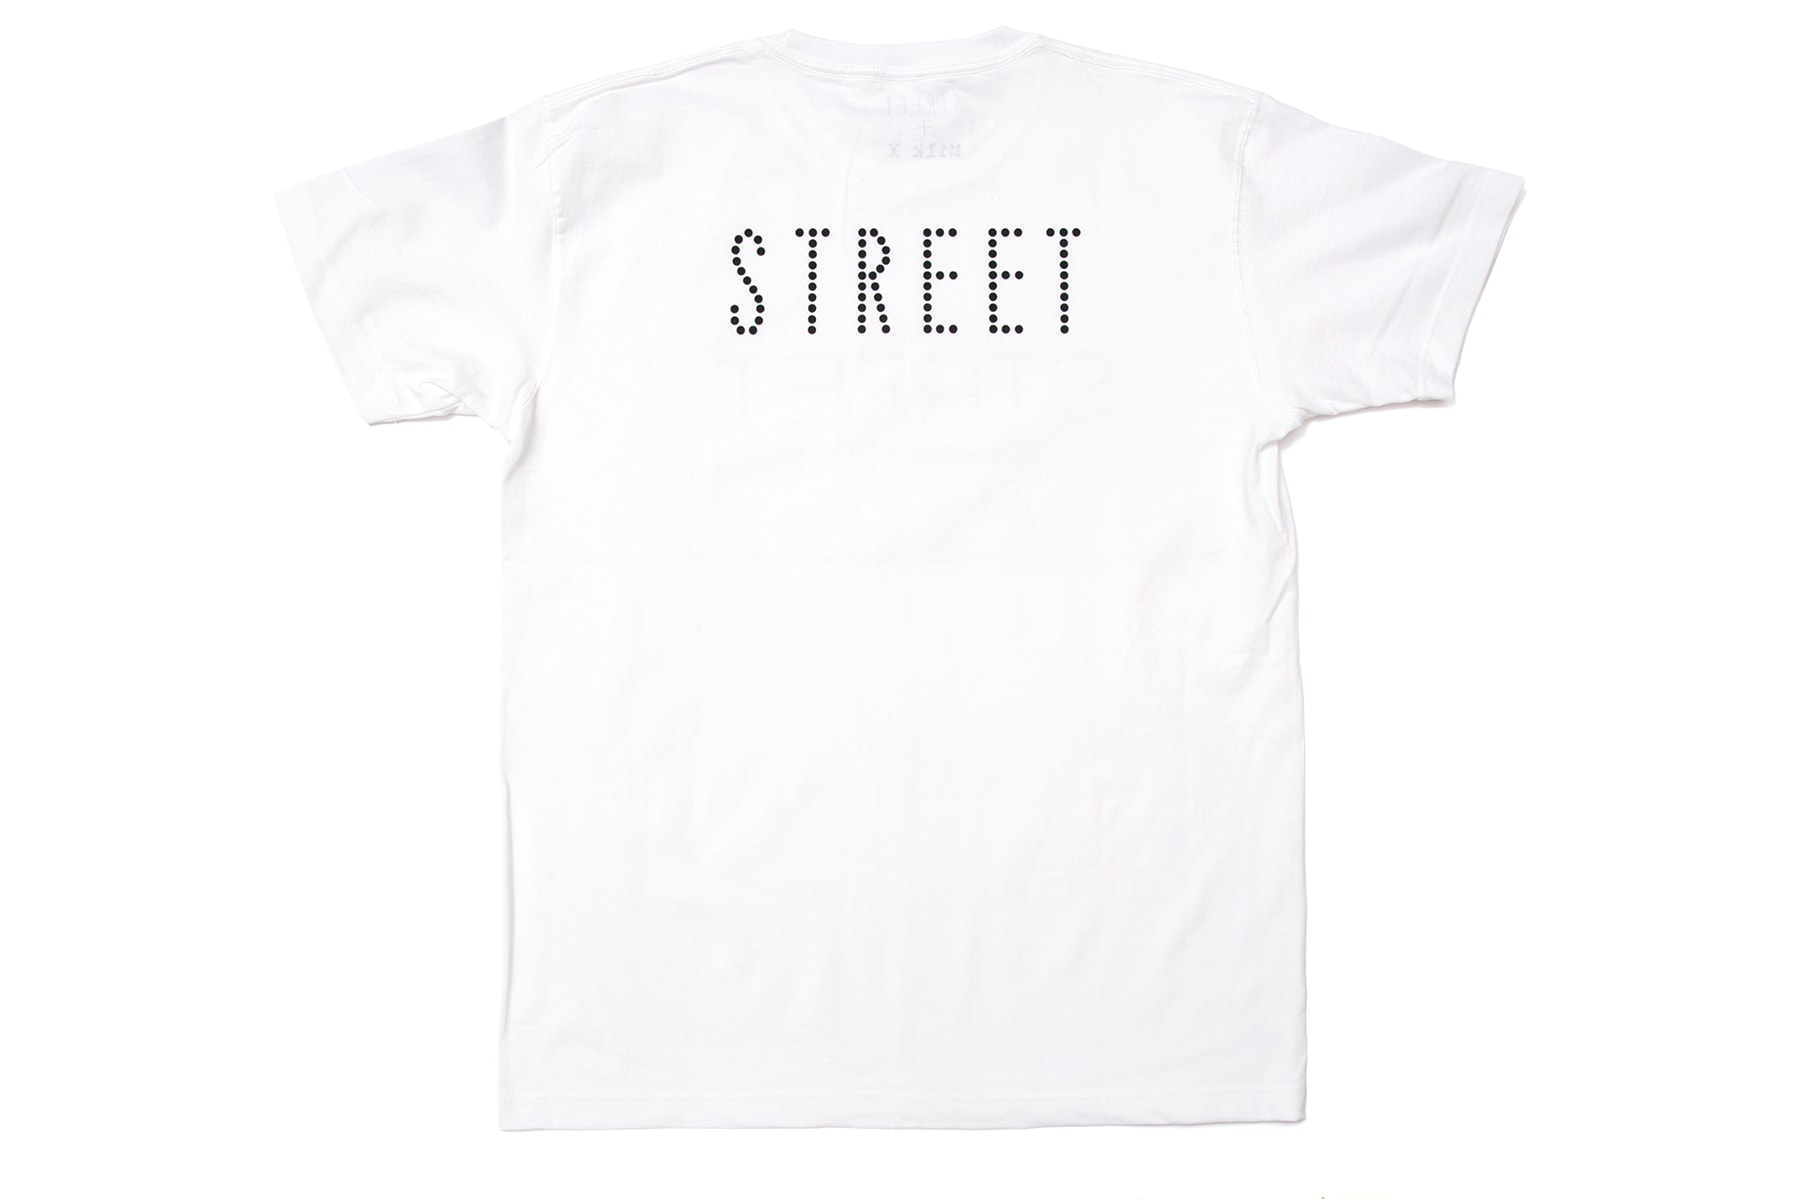 港日聯手 -《MILK X》與《STREET》攜手推出服飾聯乘系列